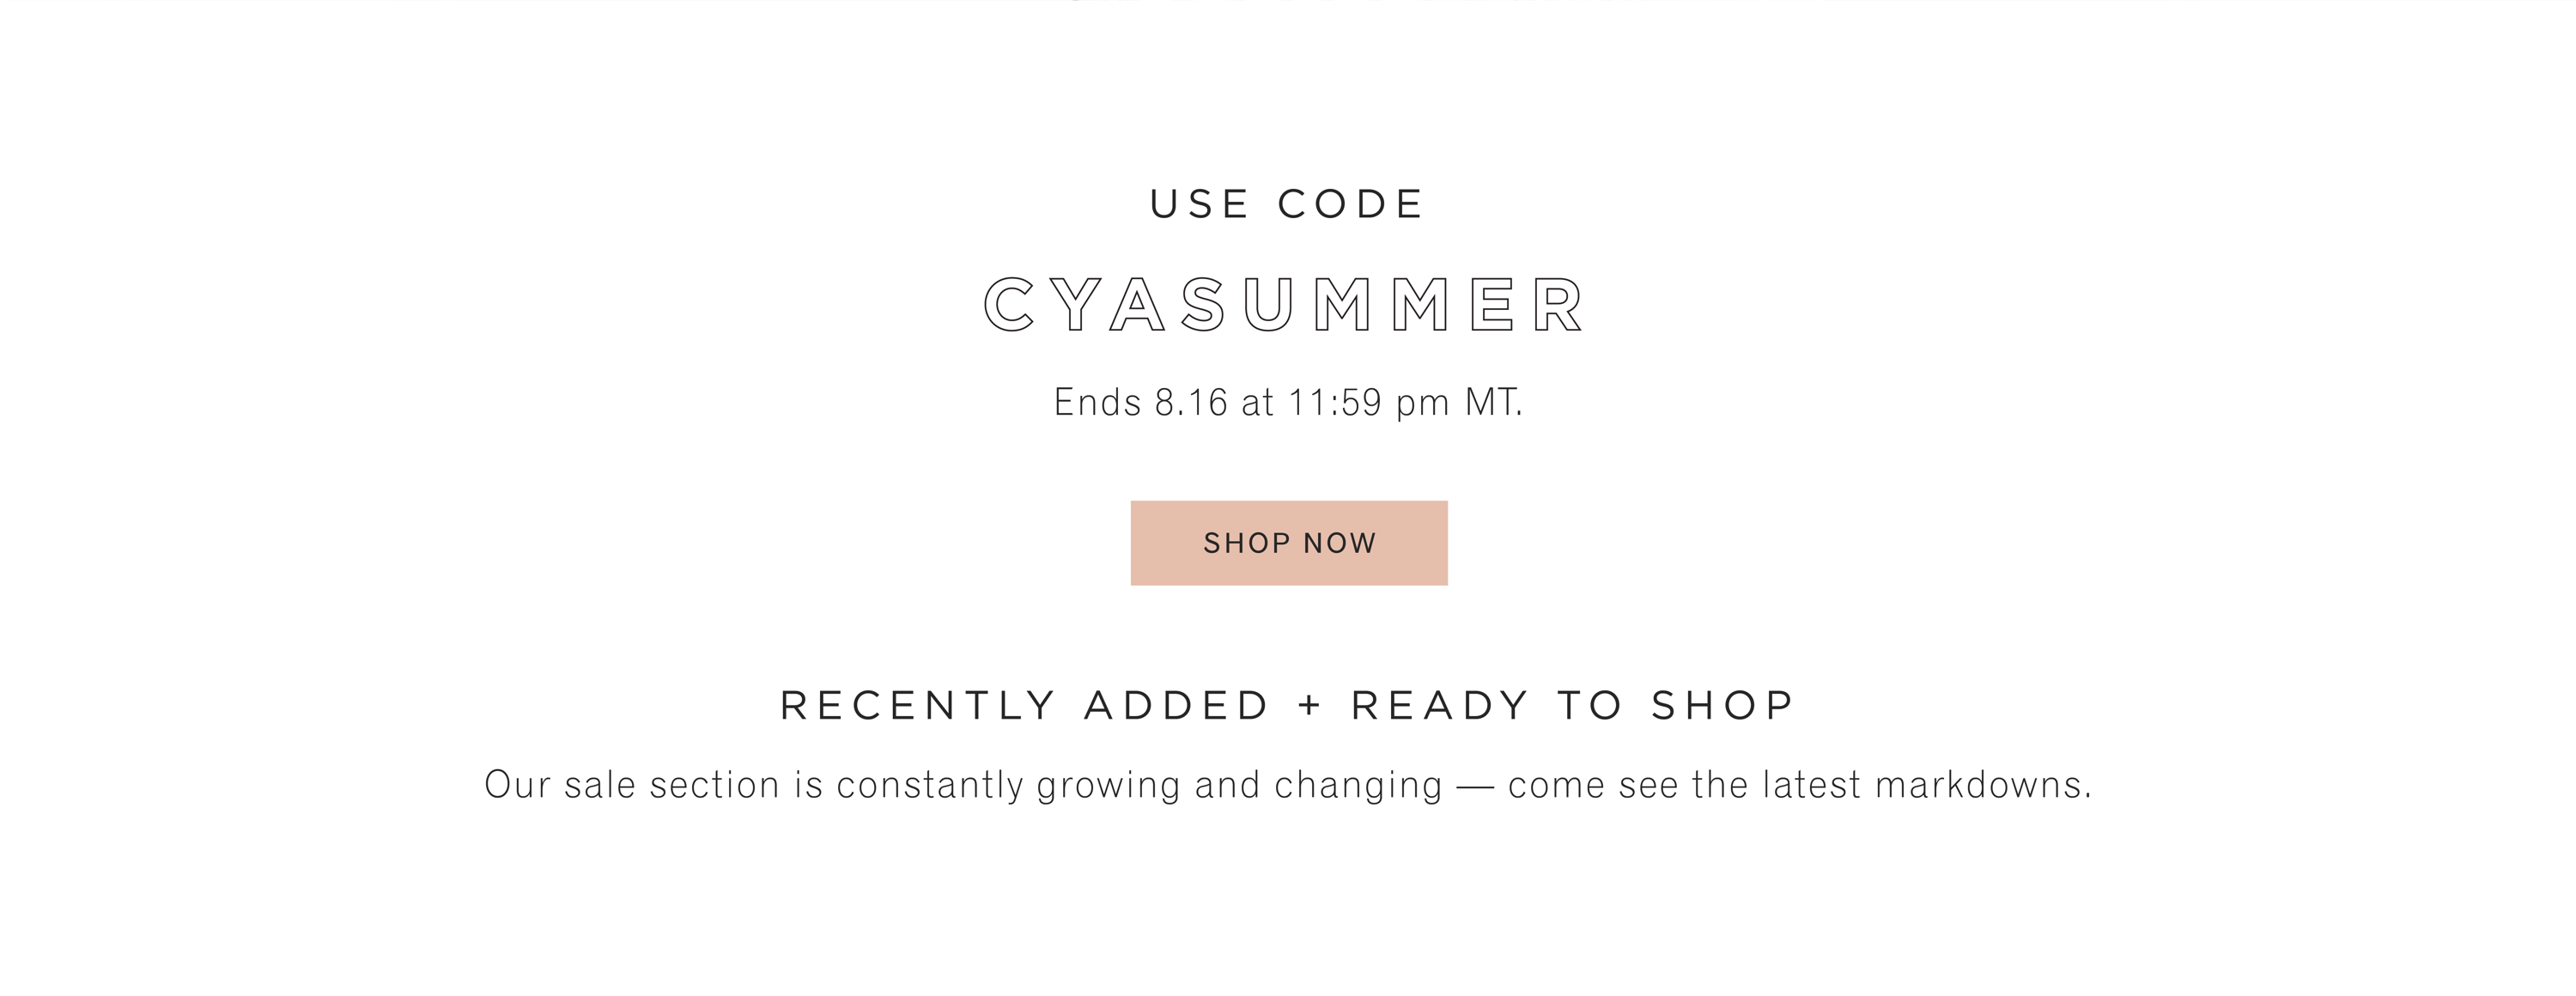 Use code: CYASUMMER